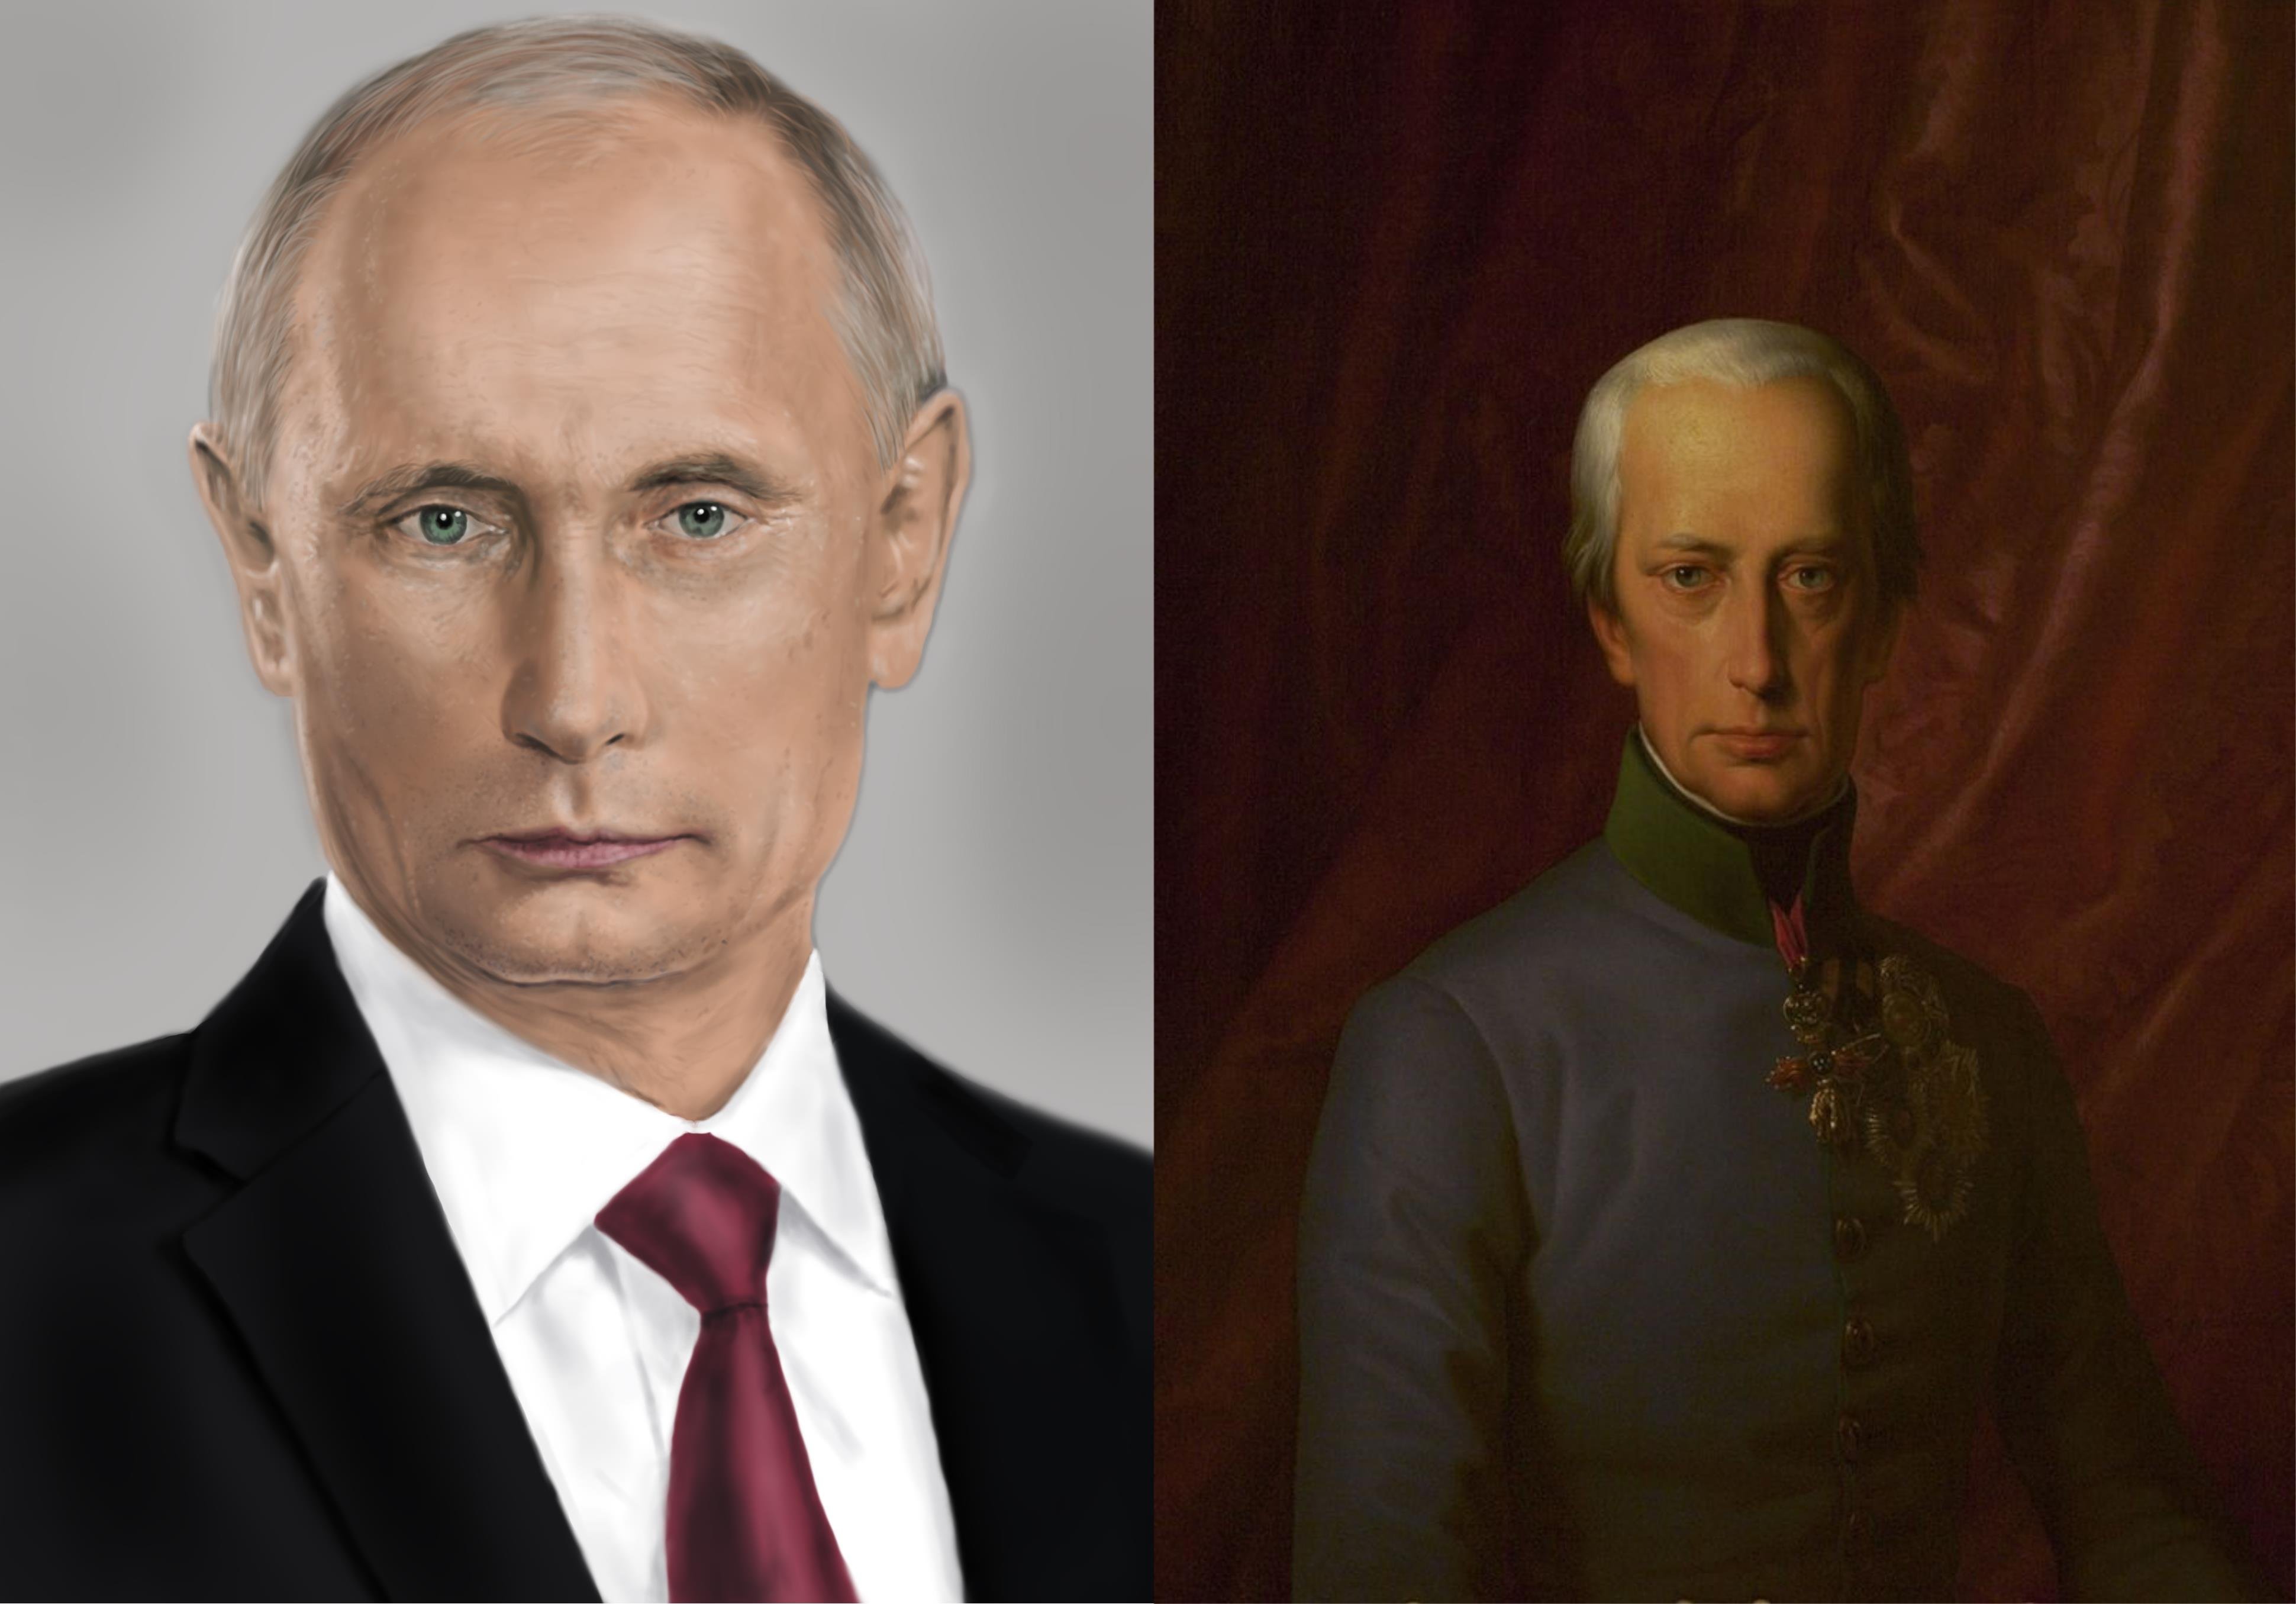 Путин Фото Портрет